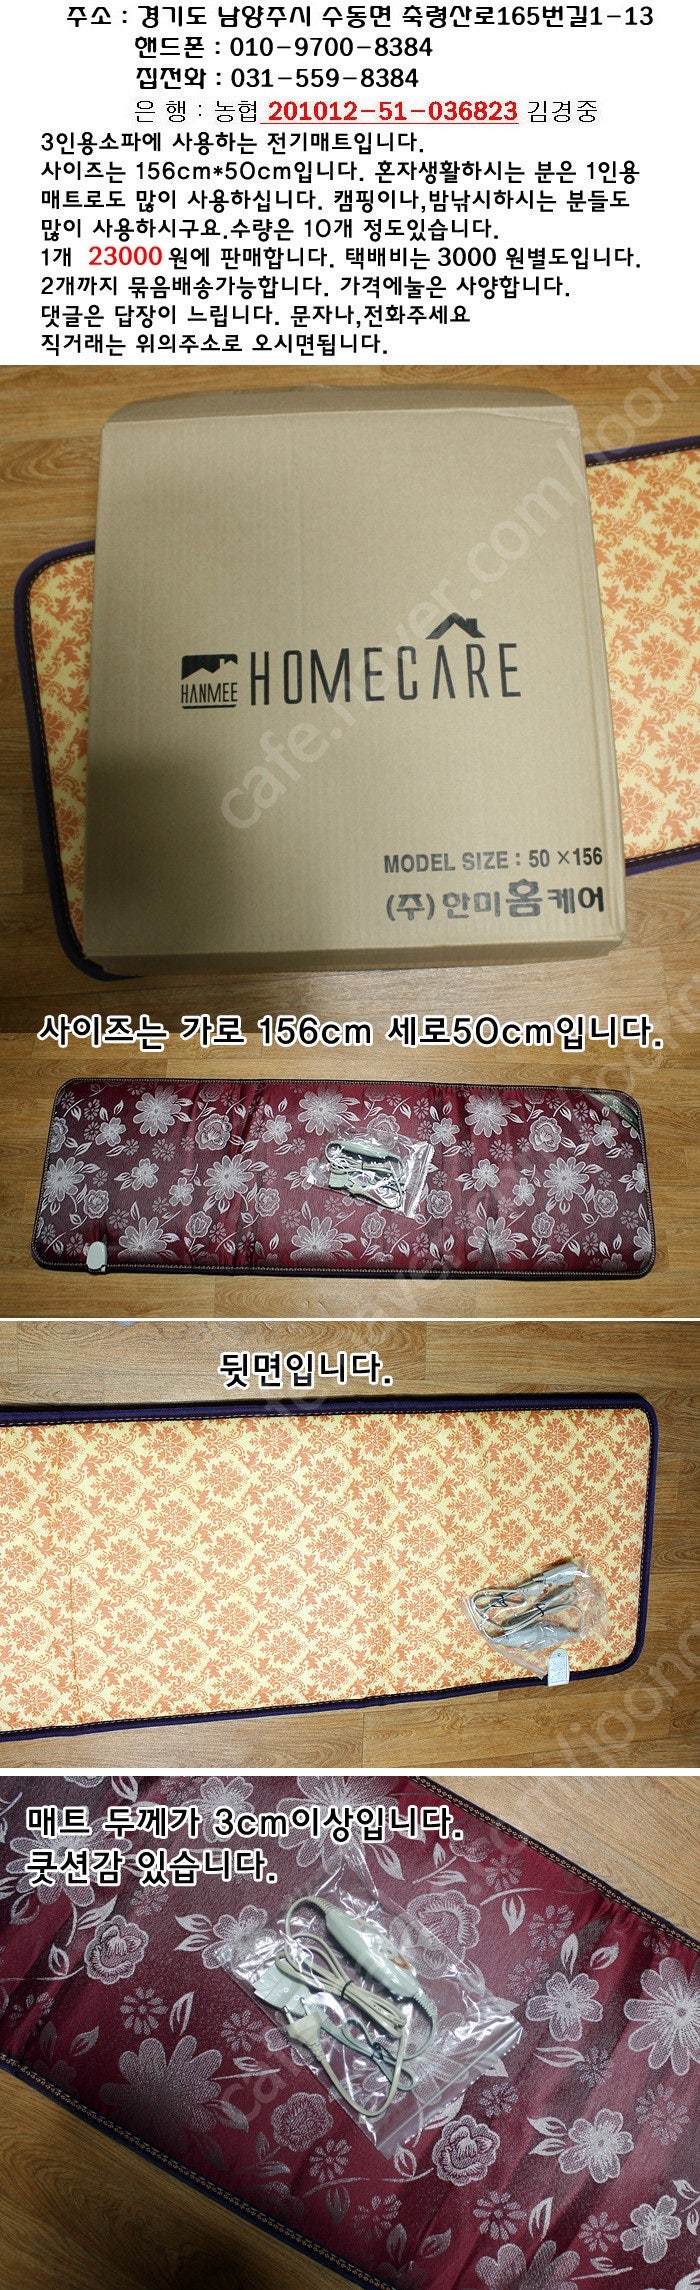 한국산 3인용쇼파 전기매트 (미사용)23000원